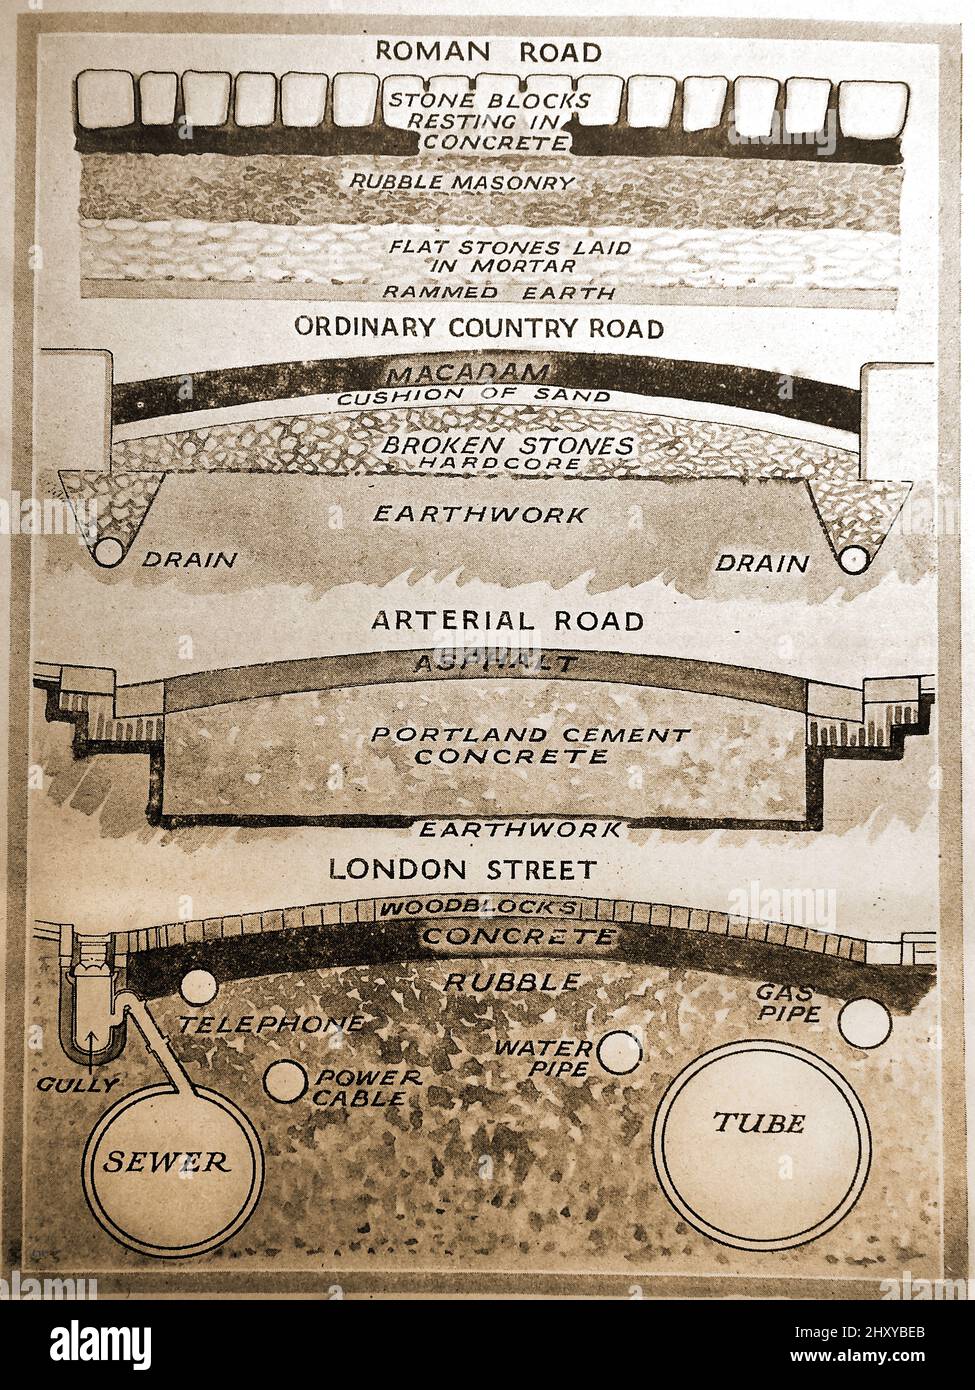 Ein frühes bildliches Diagramm, das verschiedene Arten von Straßenbau und -Bau vergleicht - RÖMISCHE STRASSE - LANDSTRASSE - ARTERIELLE STRASSE und eine LONDONER STRASSE (aus Holzblöcken) Stockfoto